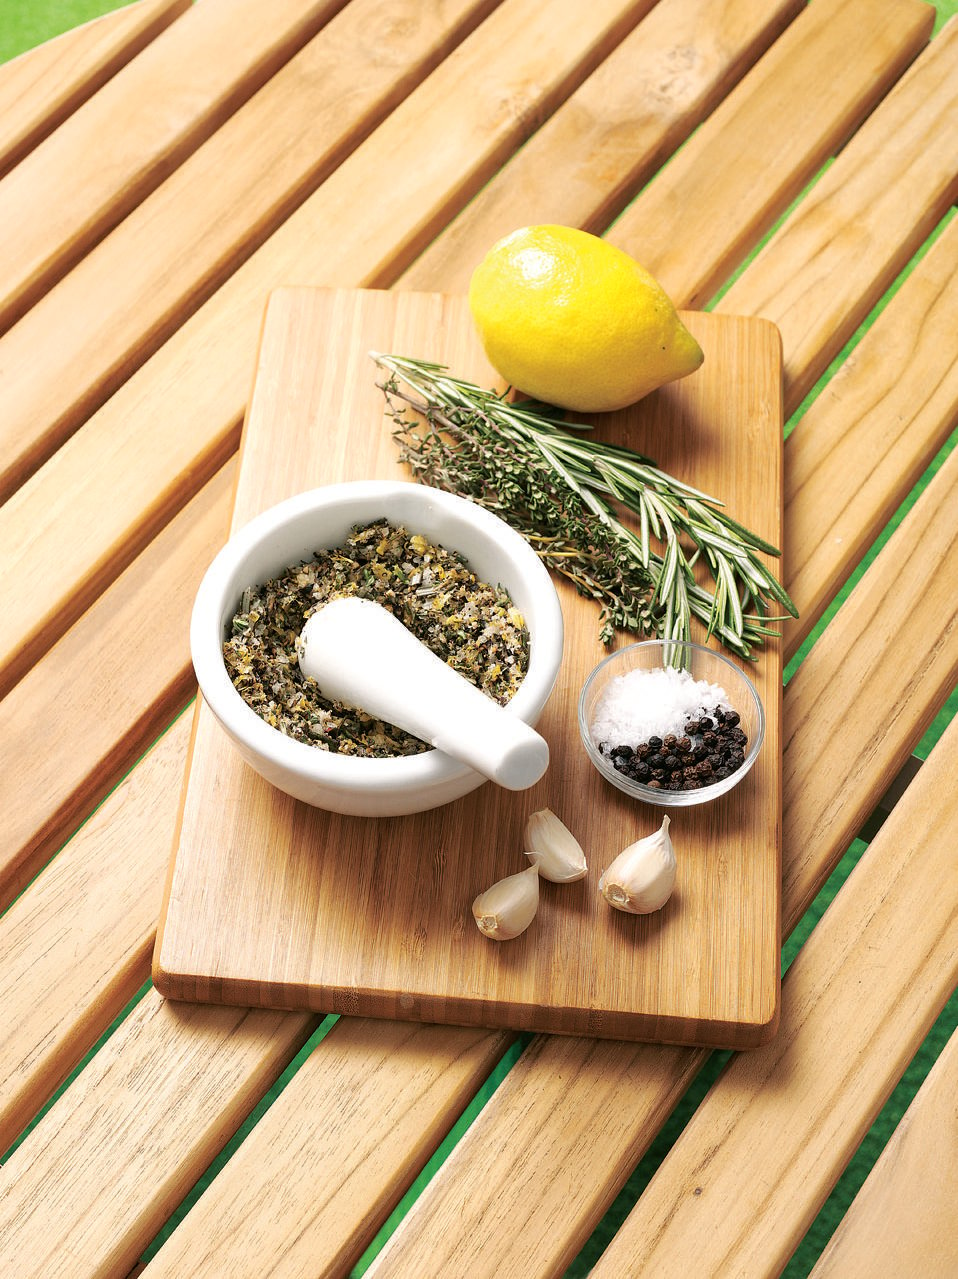 Lemon and herb rub recipe